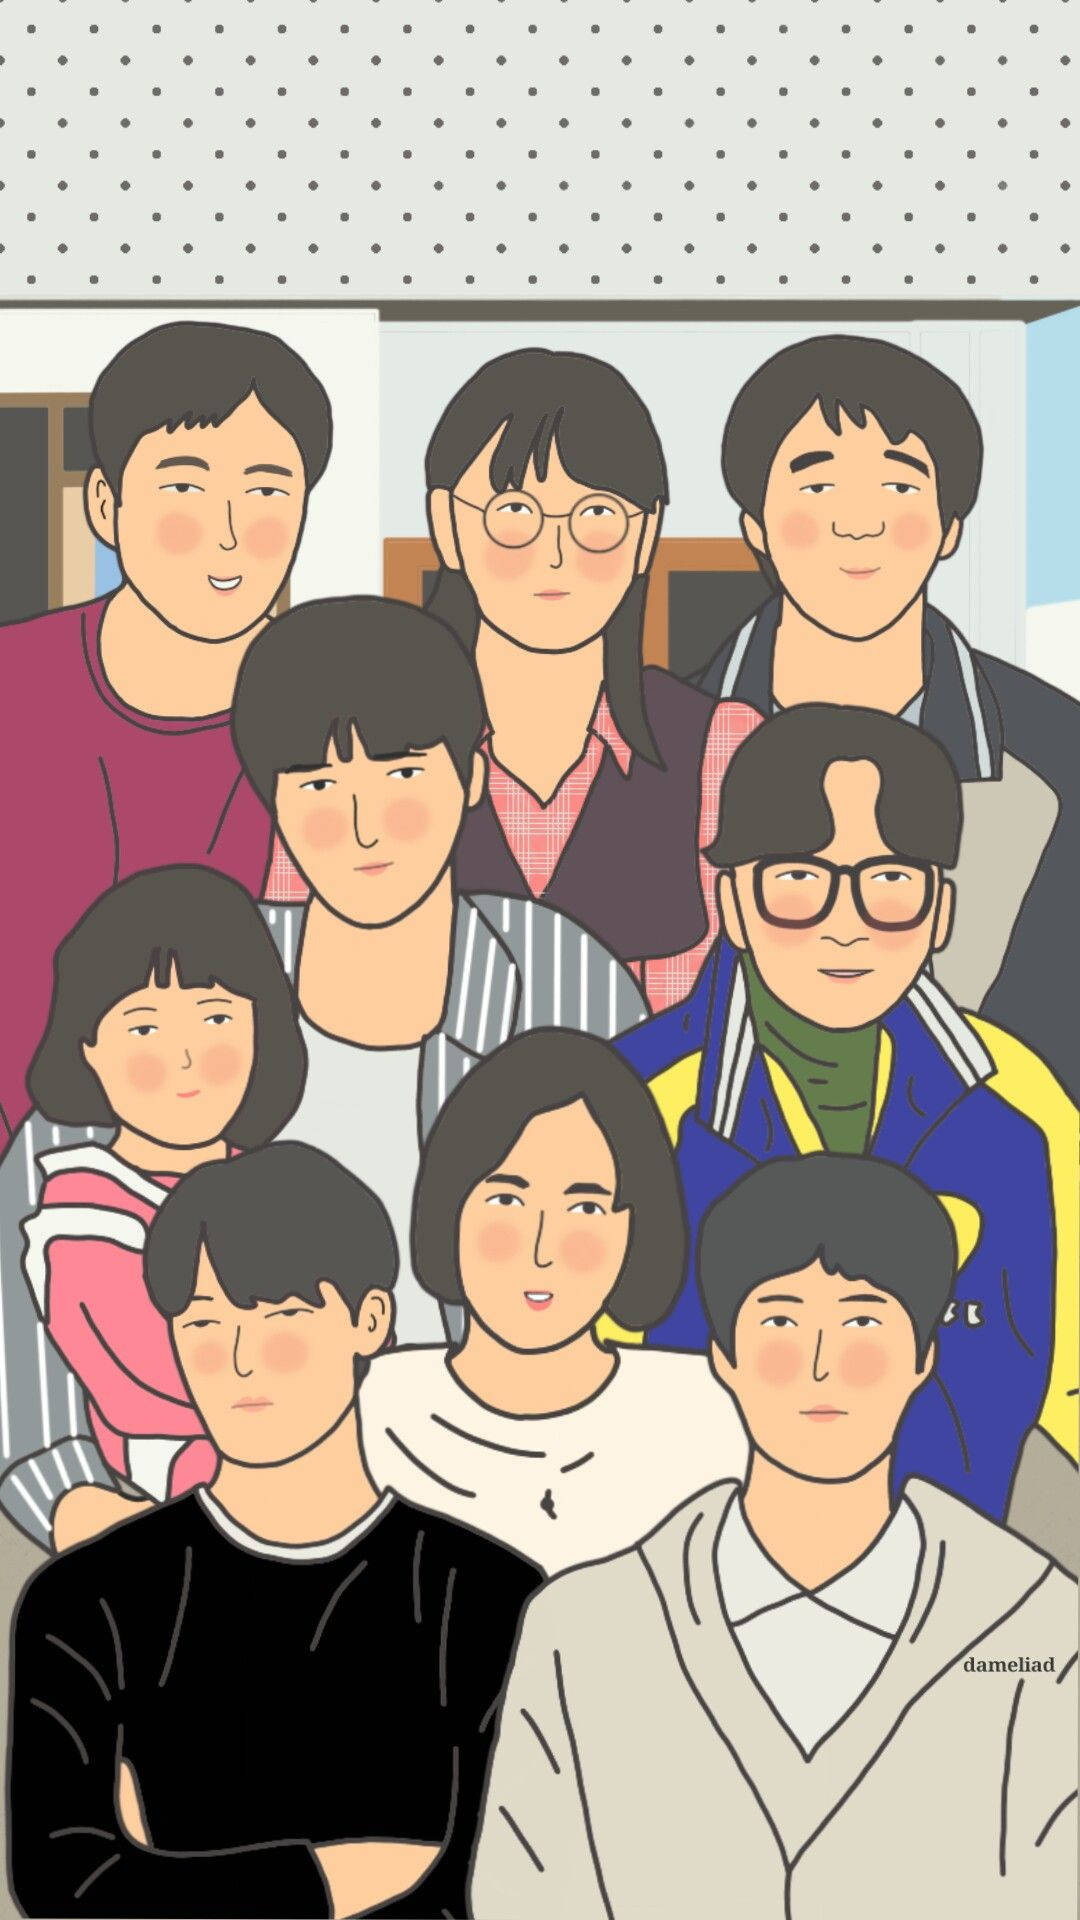 Download Reply 1988 Park Bo-gum Korean Actor Wallpaper